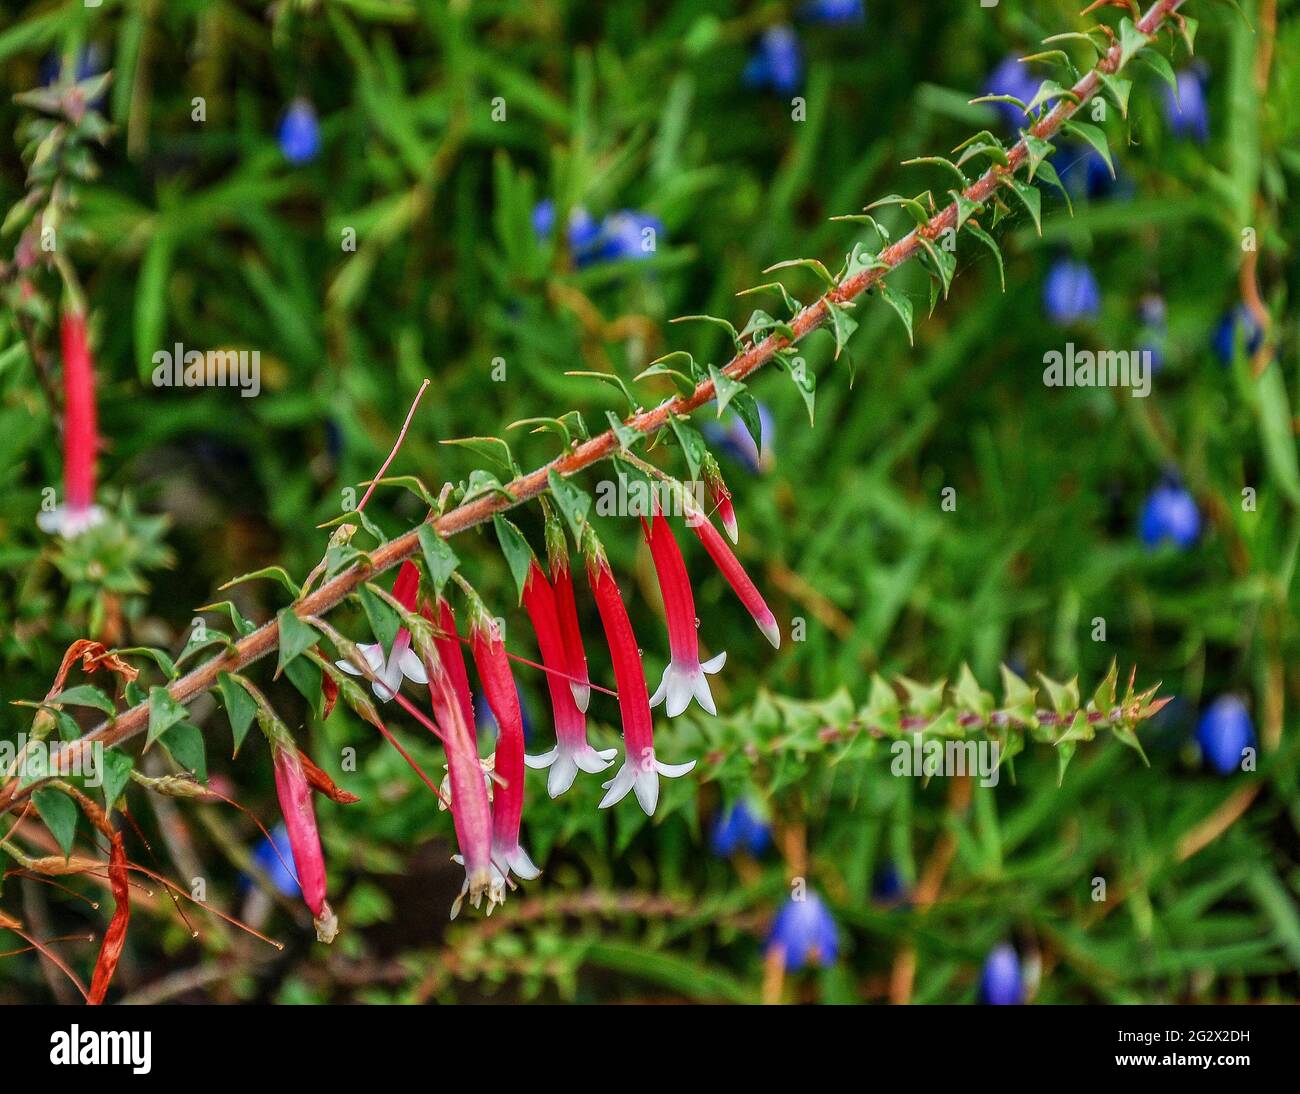 Agapetes, un vert éternel subtropical avec de longues pousses souples ornées de fleurs en forme de cloche rose rouge vif. Banque D'Images